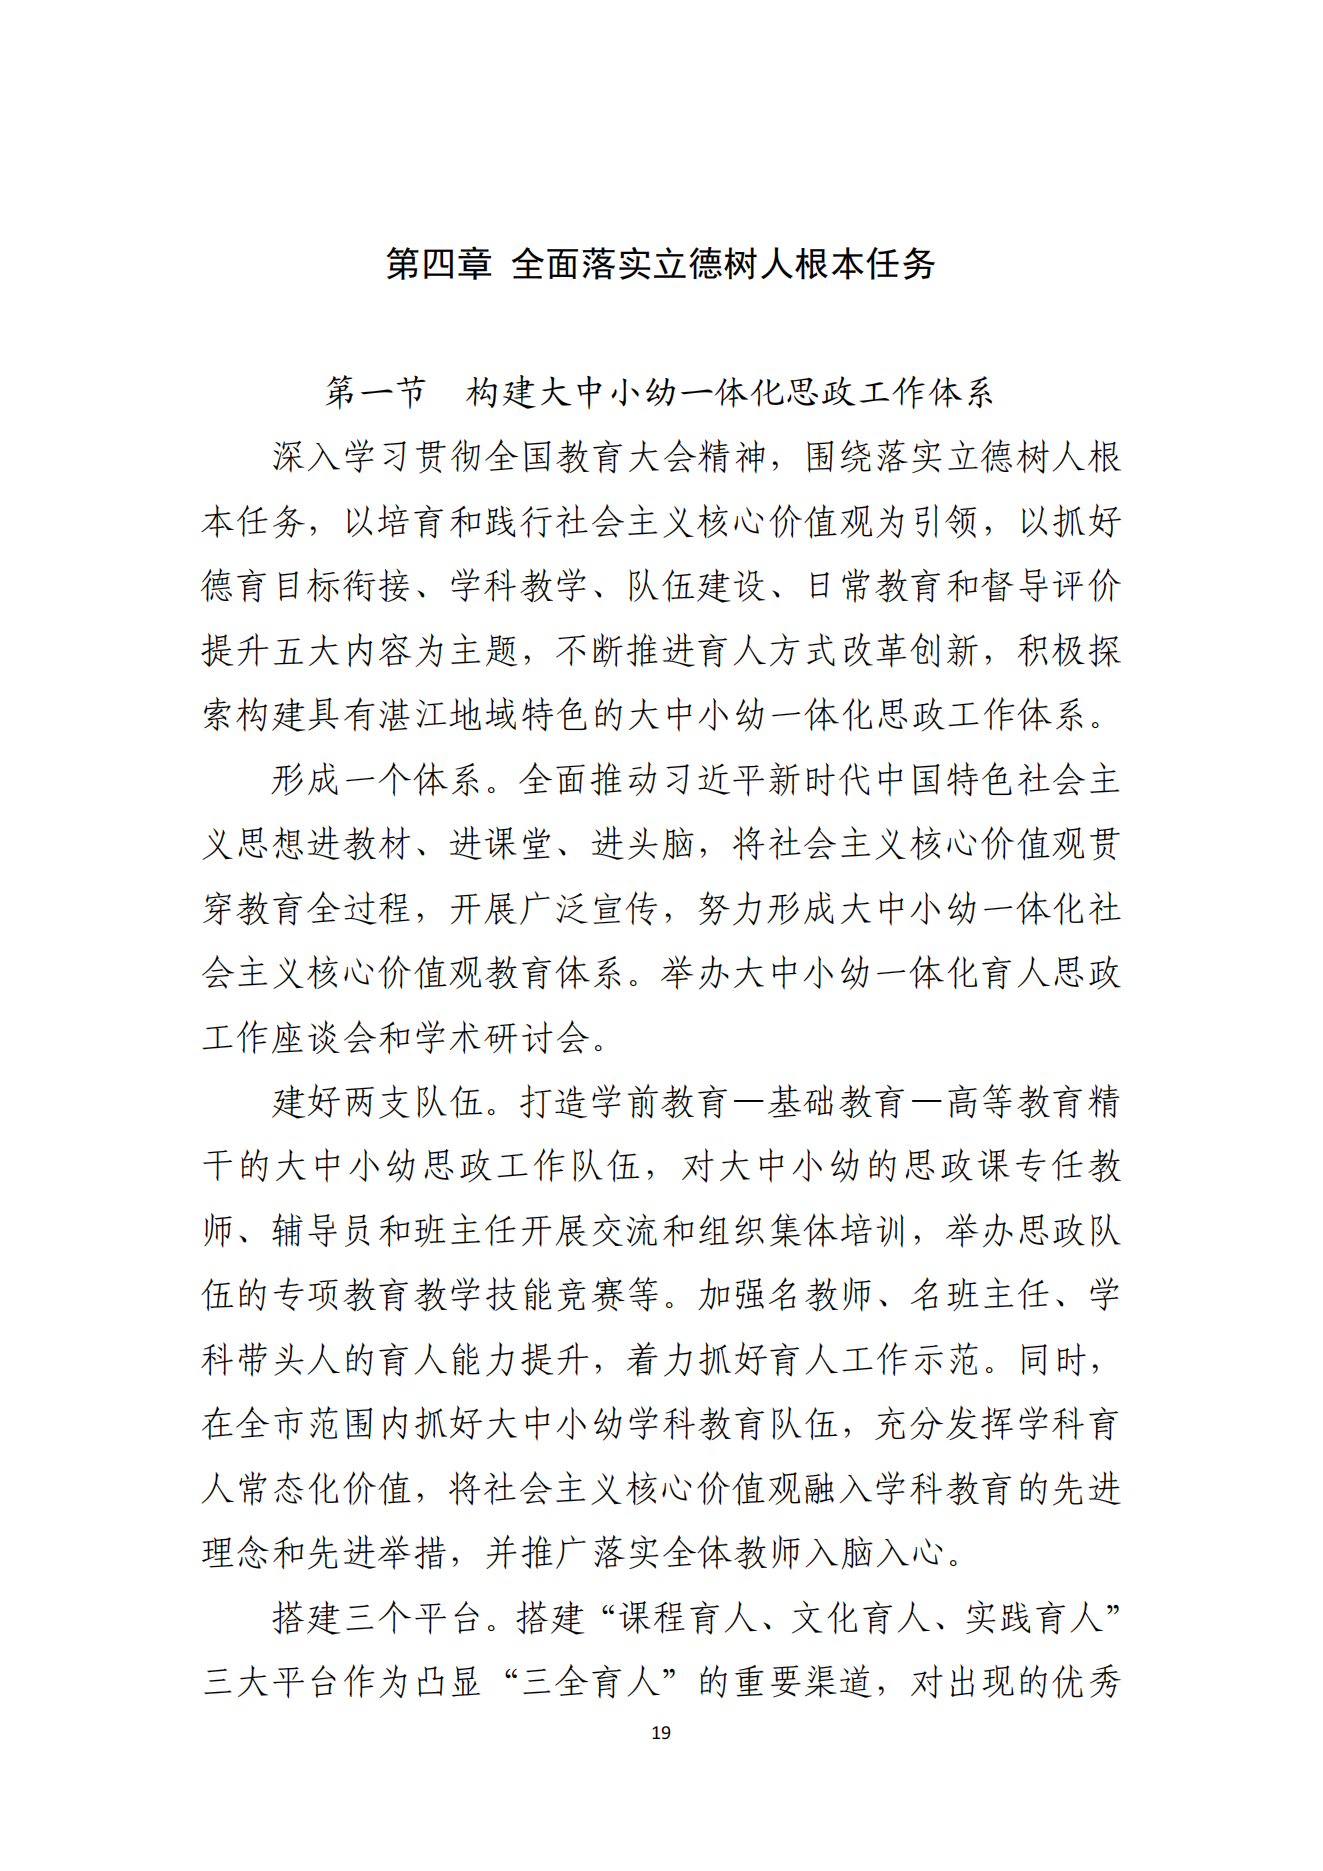 湛江市人民政府办公室关于印发湛江市教育发展“十四五”规划的通知_18.png